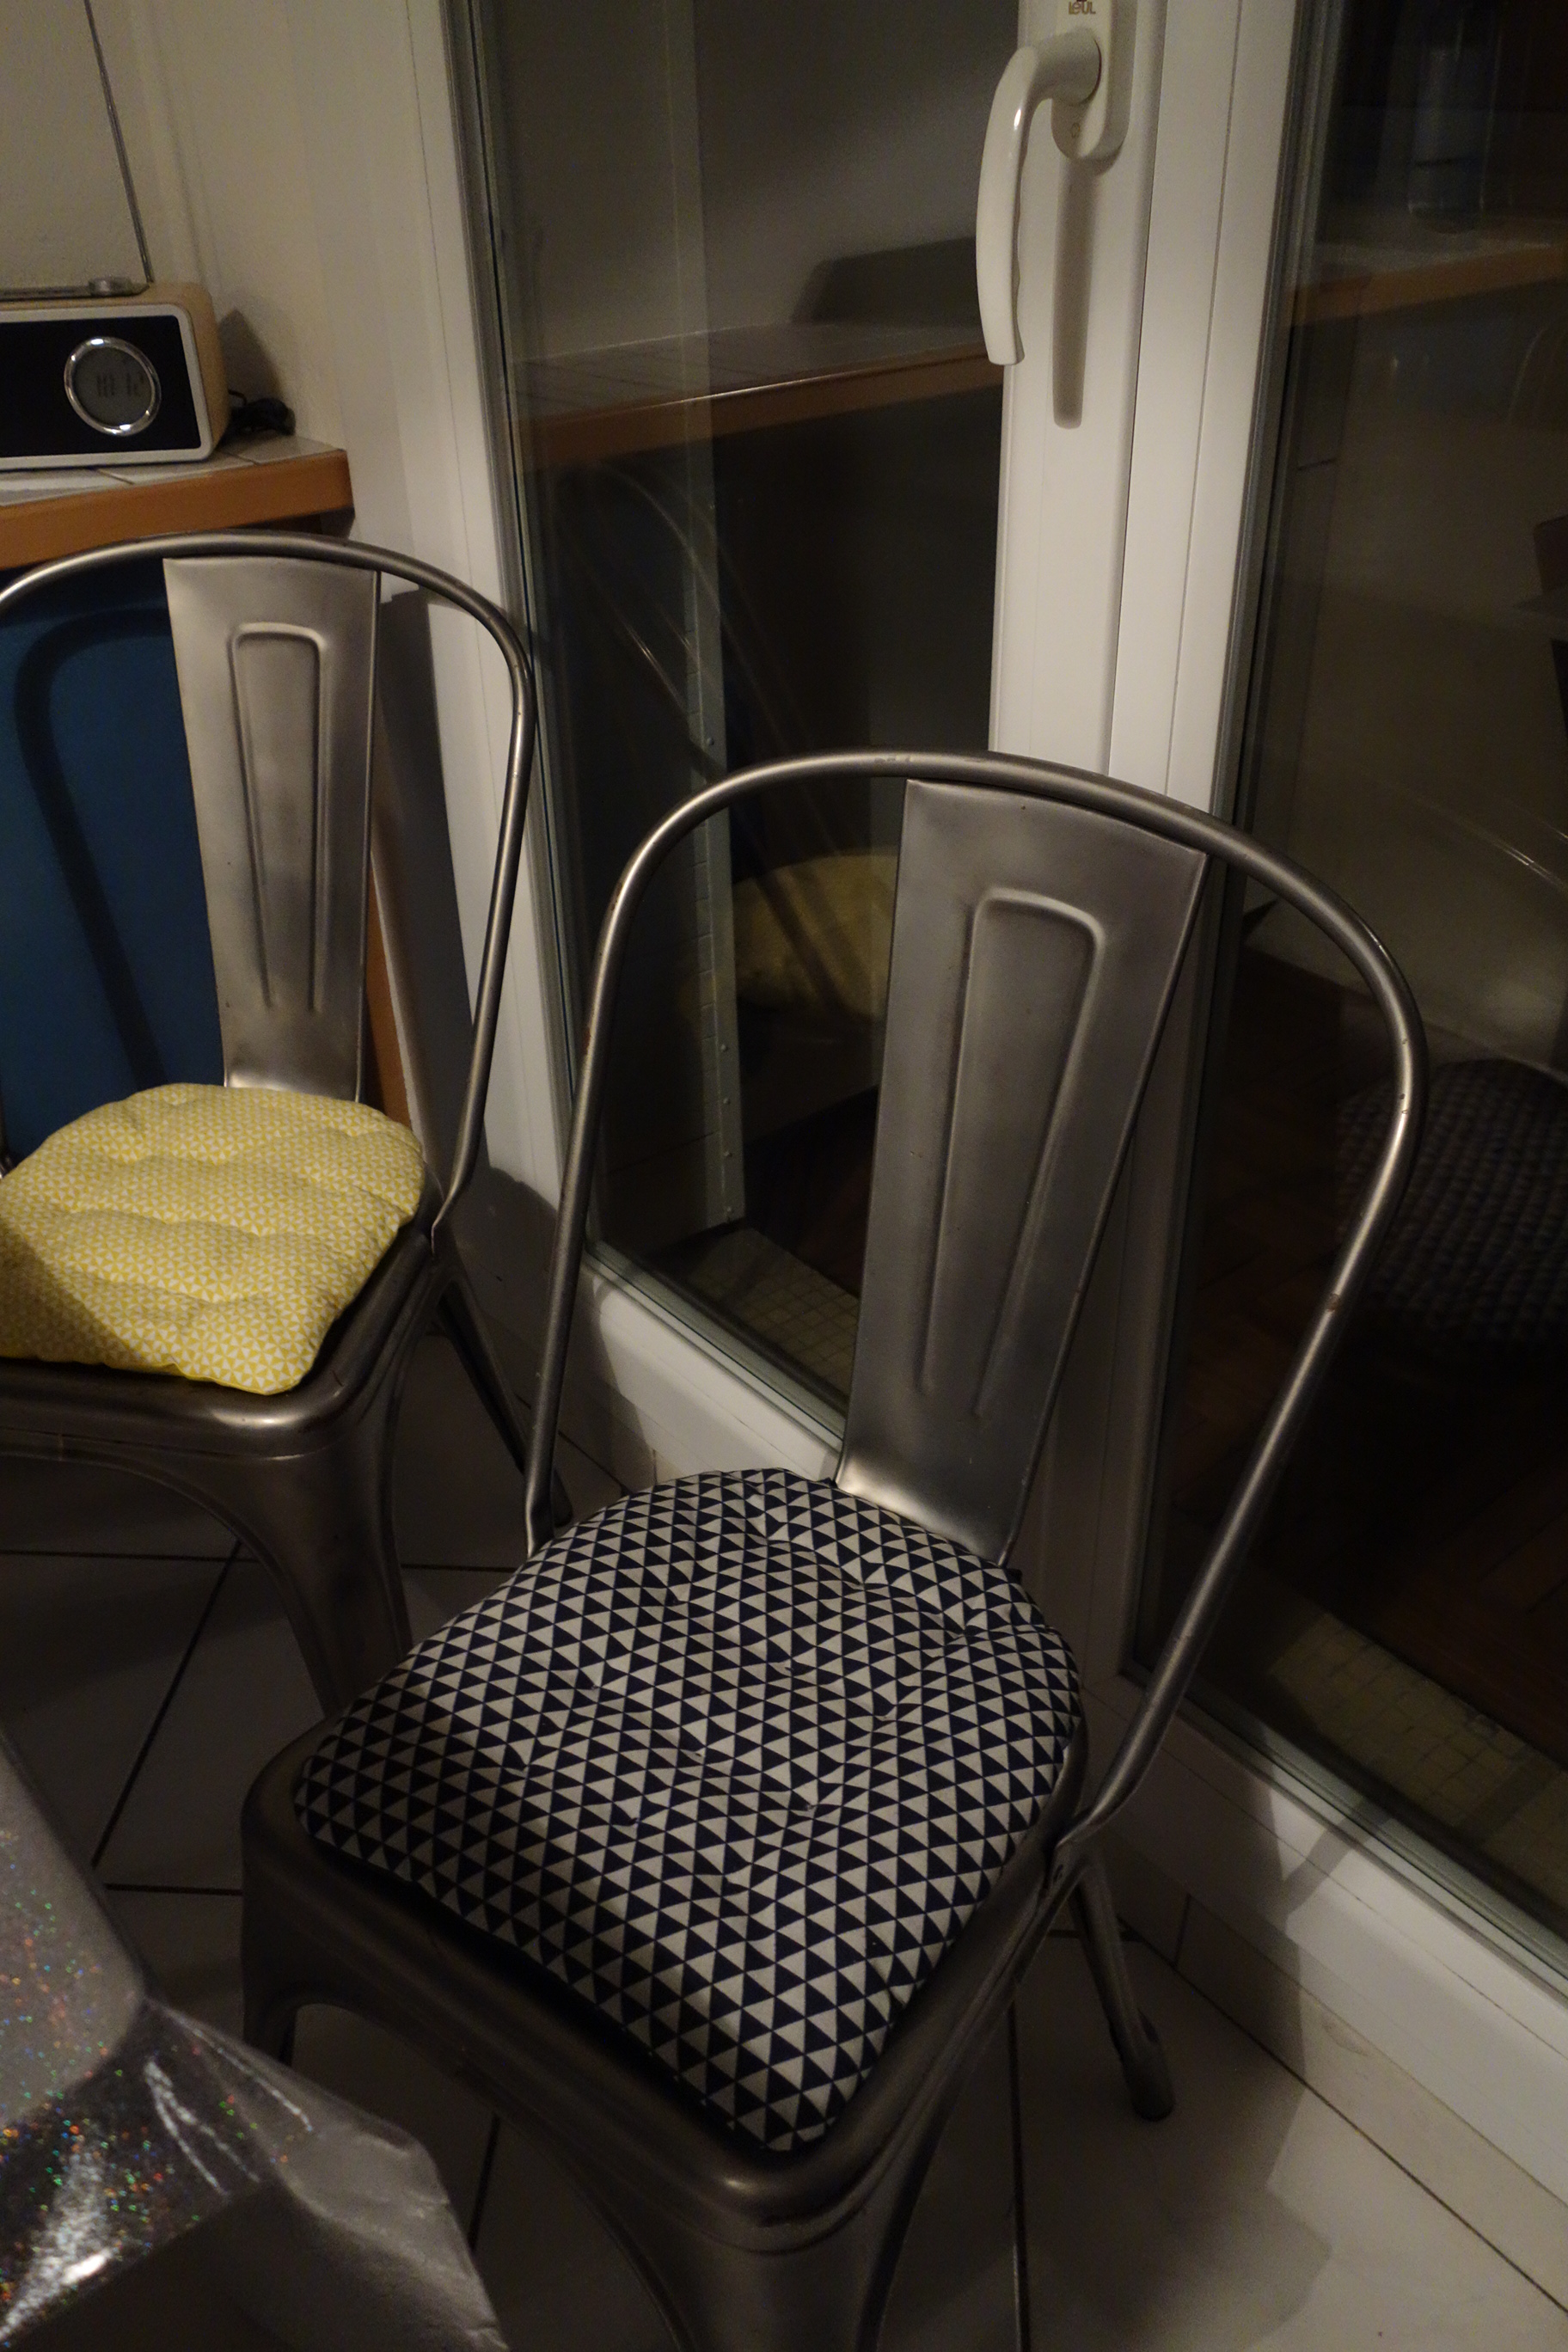 Des galettes de chaise à la mesure des Tolix – Bricabag : mon bric à bagues